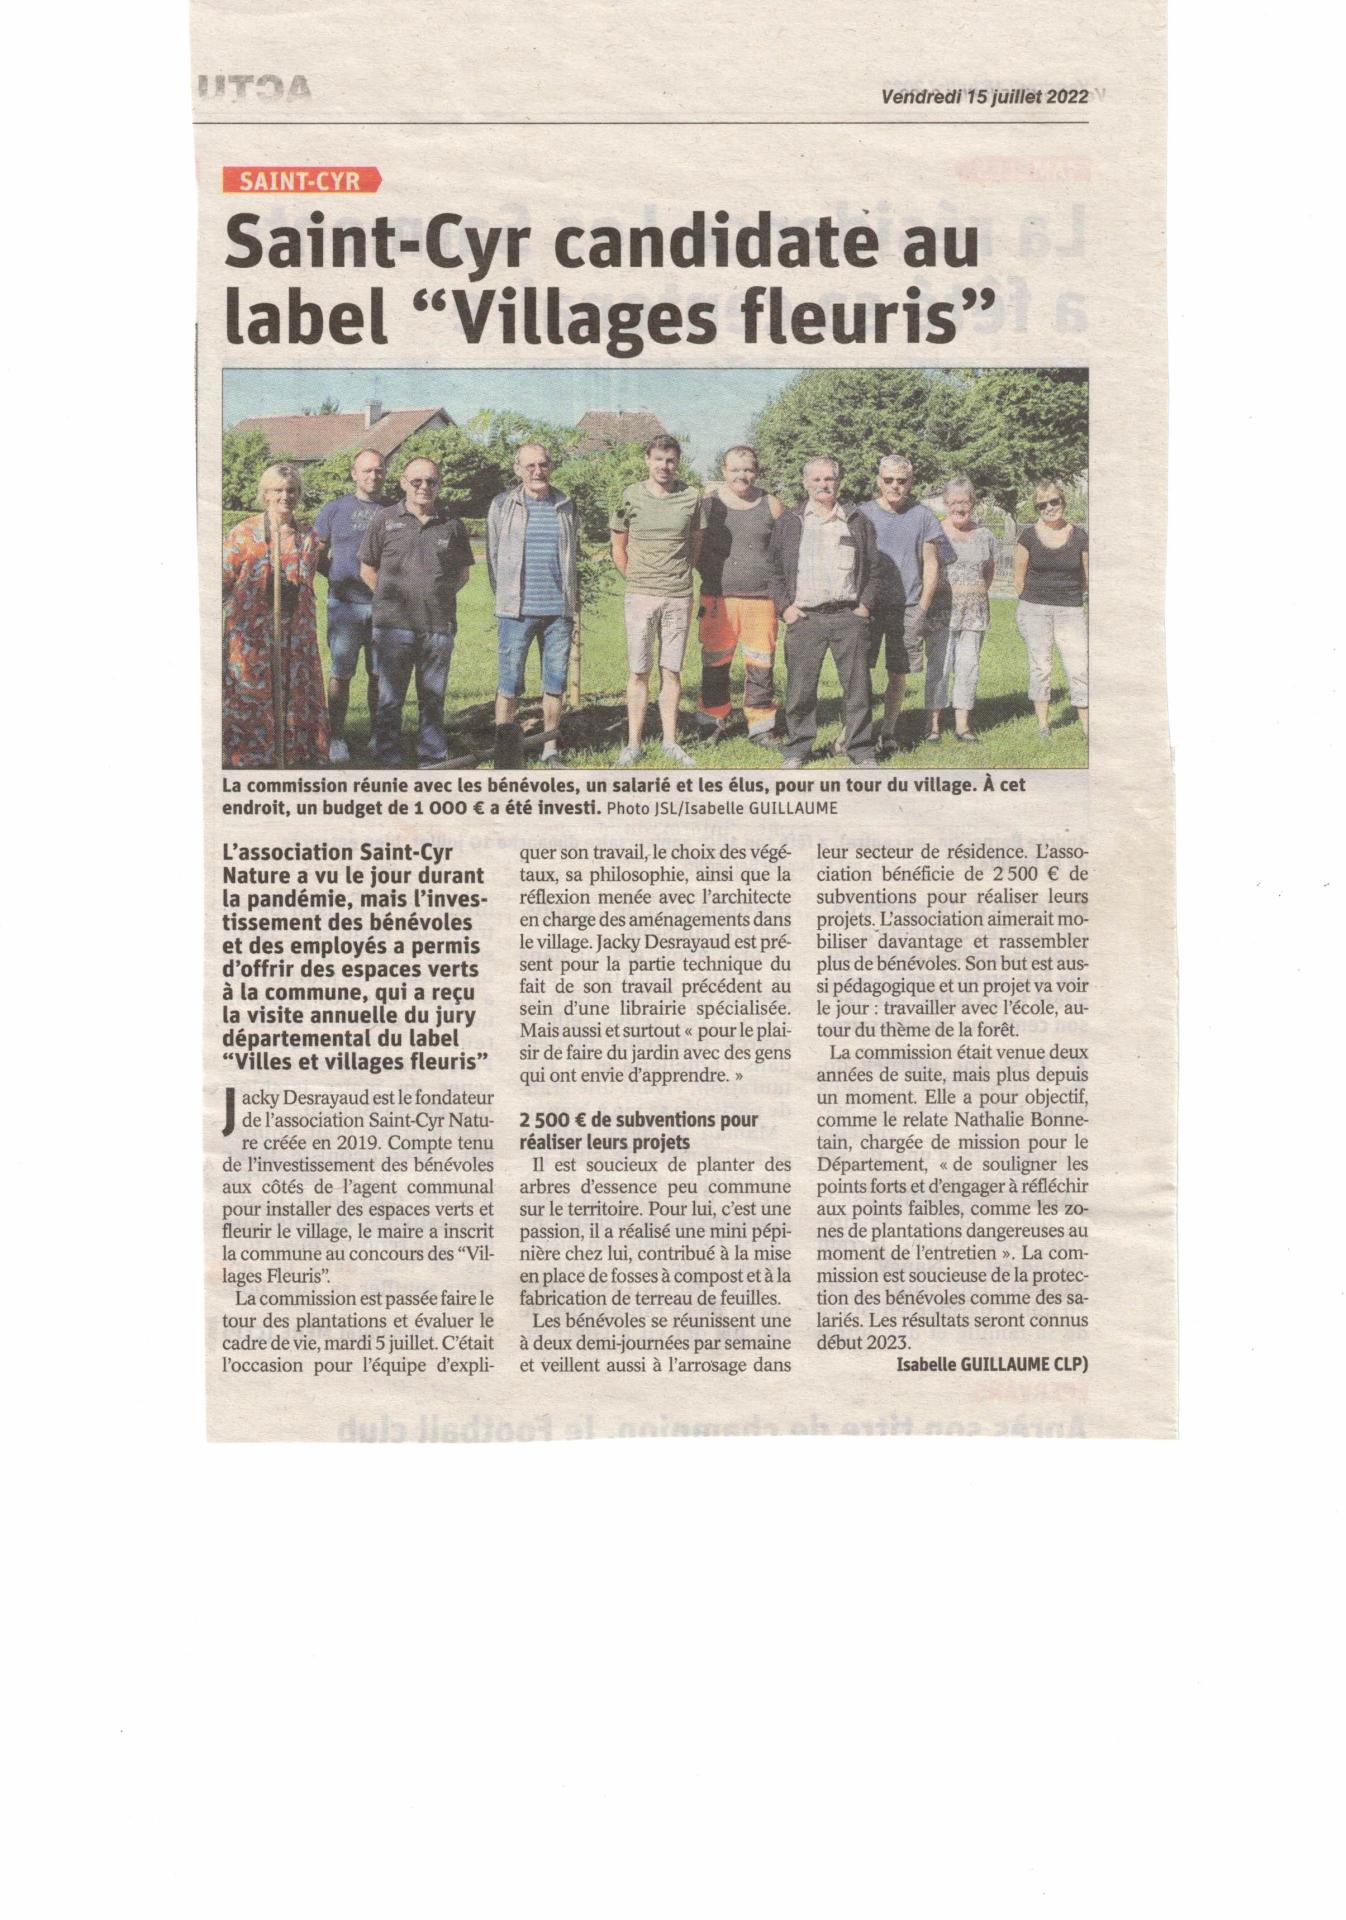 Saint-Cyr candidate au label "Villages fleuris"